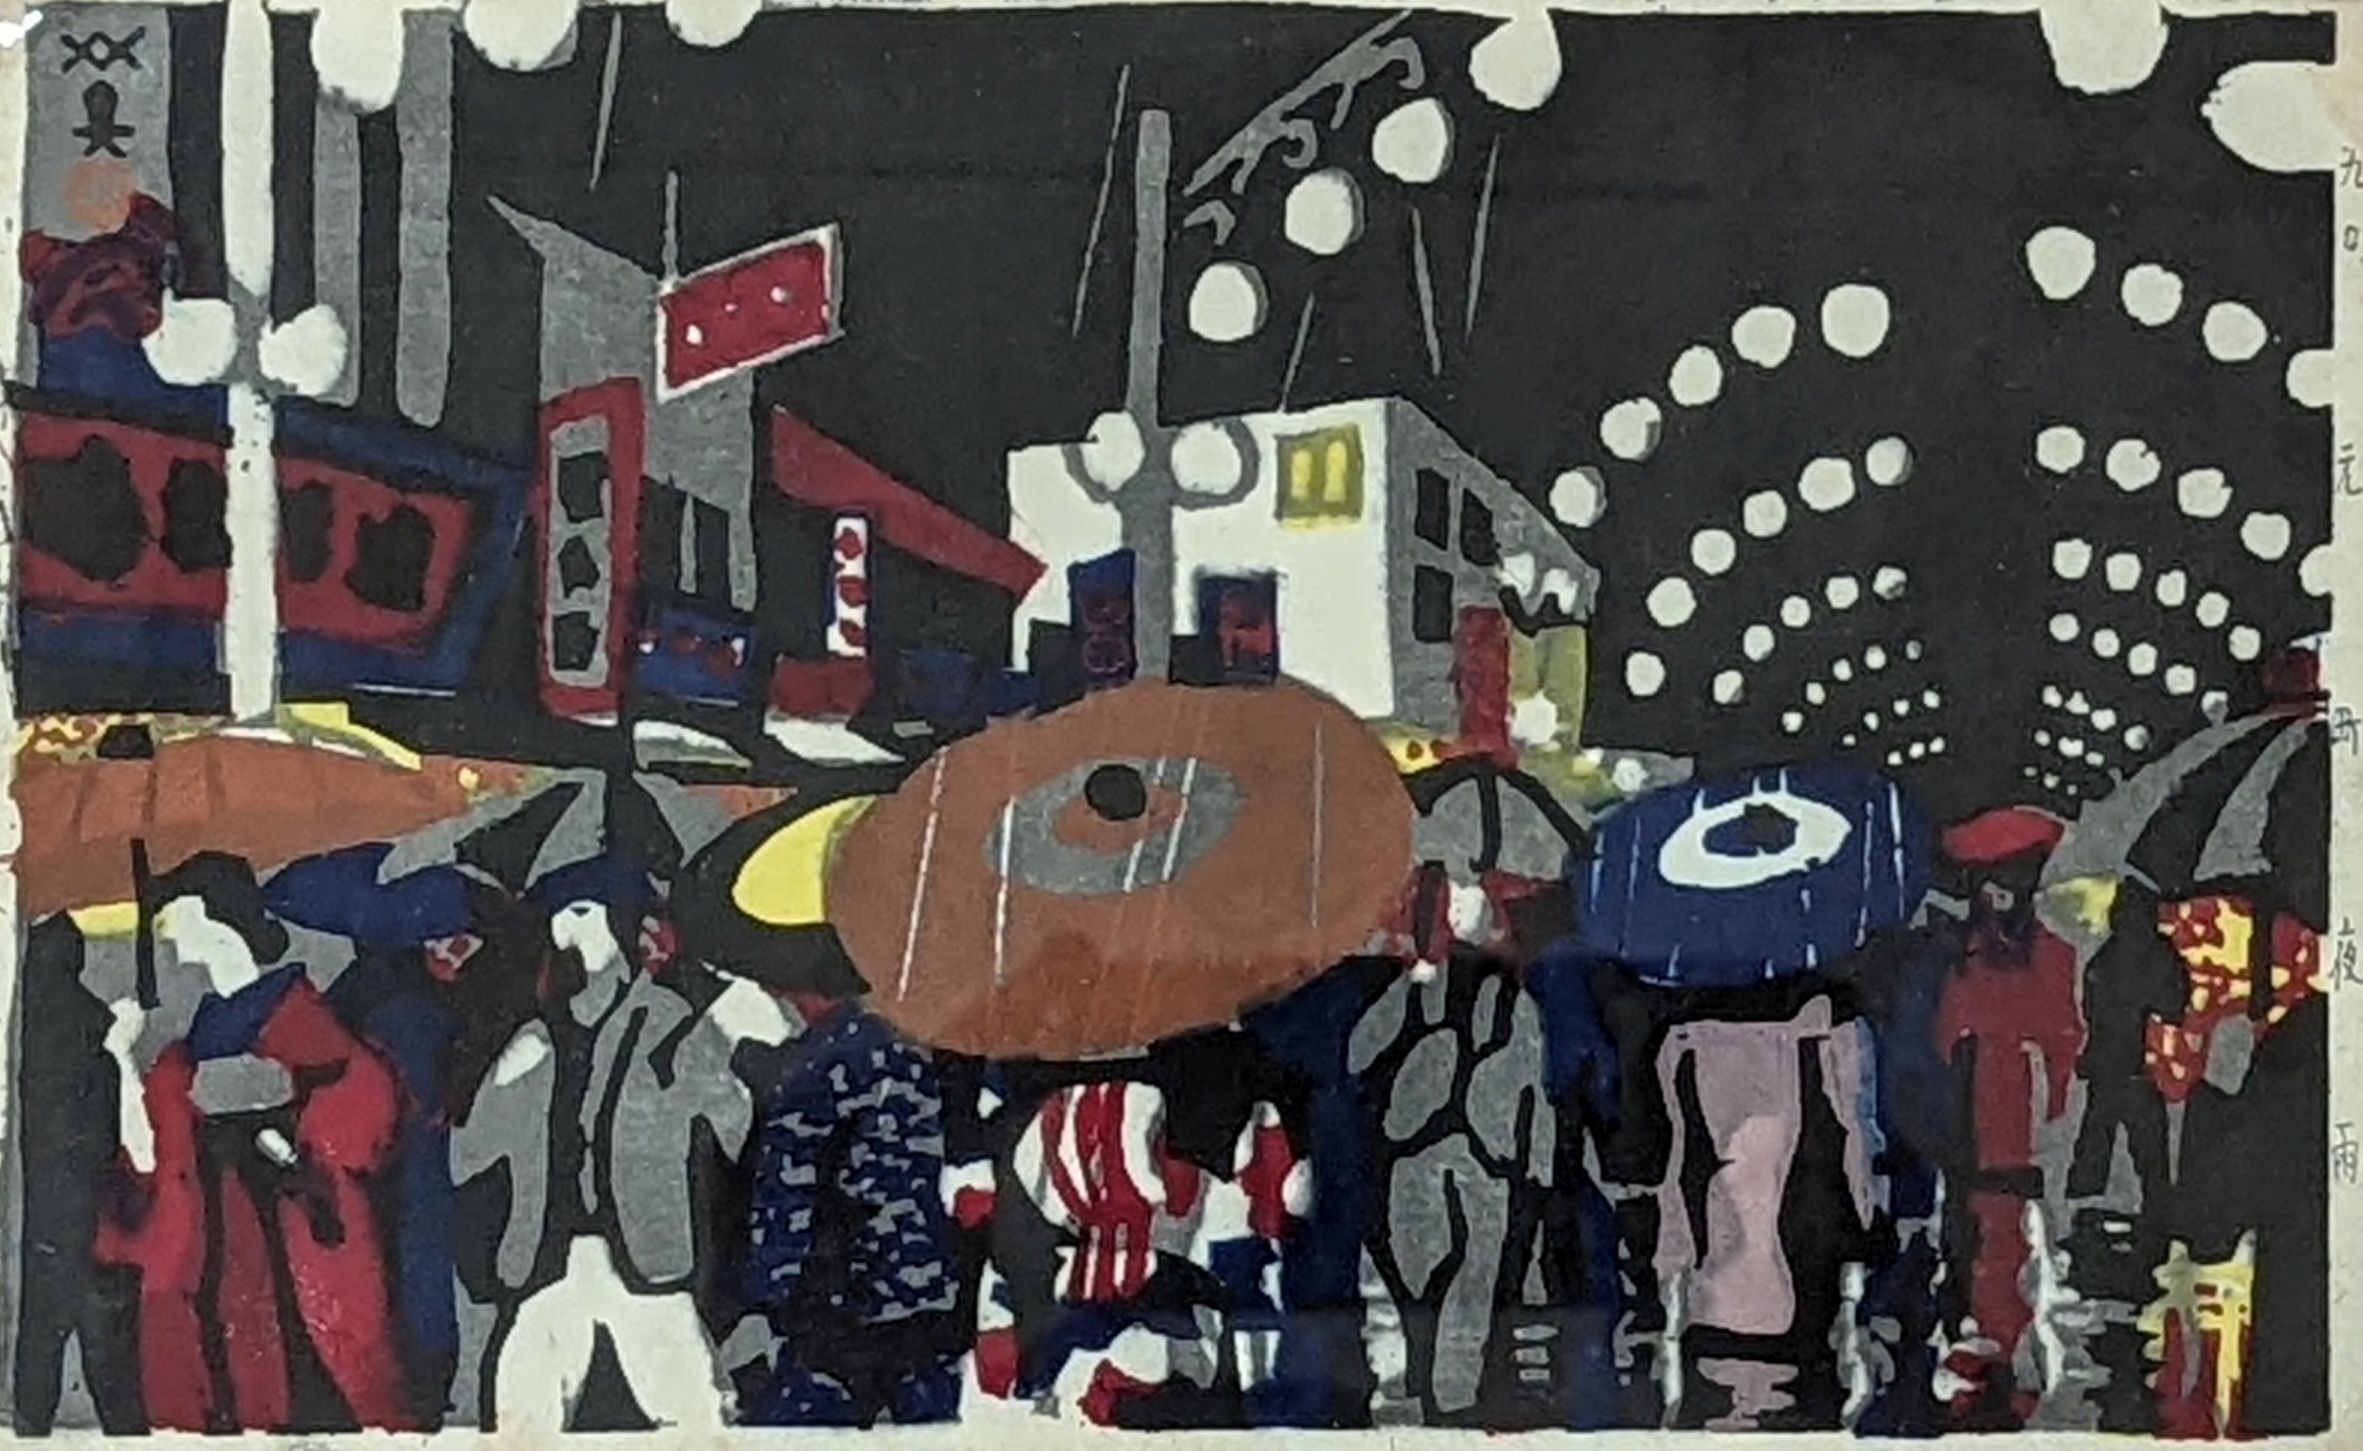 Hide Kawanishi (1894-1965), woodblock print, Street scene at night, 16 x 26cm